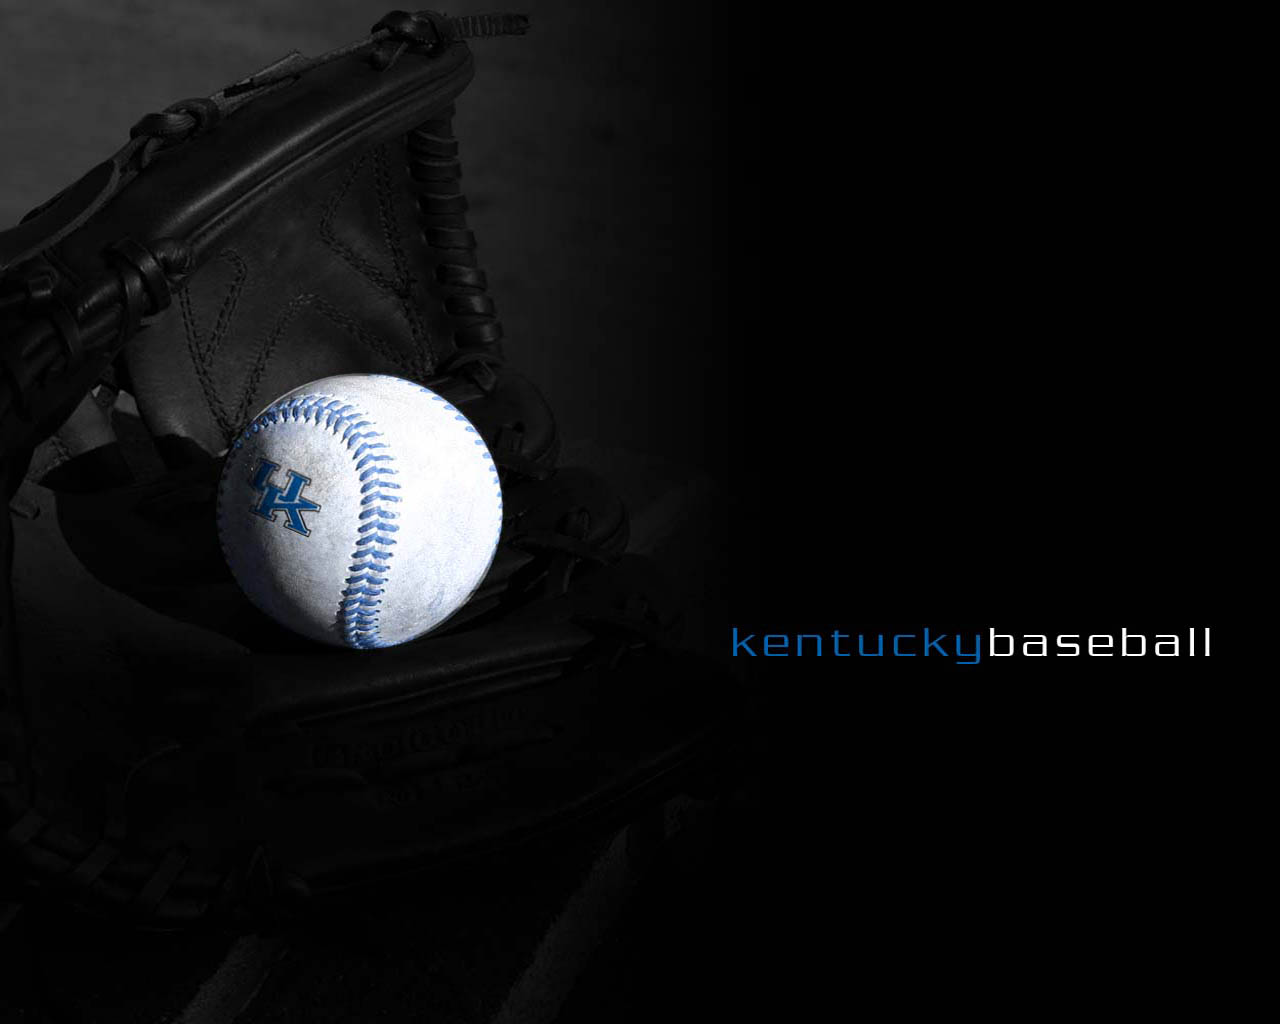 http://2.bp.blogspot.com/_TcwbPuj2SZ0/S9ChnEFjjaI/AAAAAAAAQiM/EpmutOU59Wo/s1600/baseball-Desktop-Background.jpg